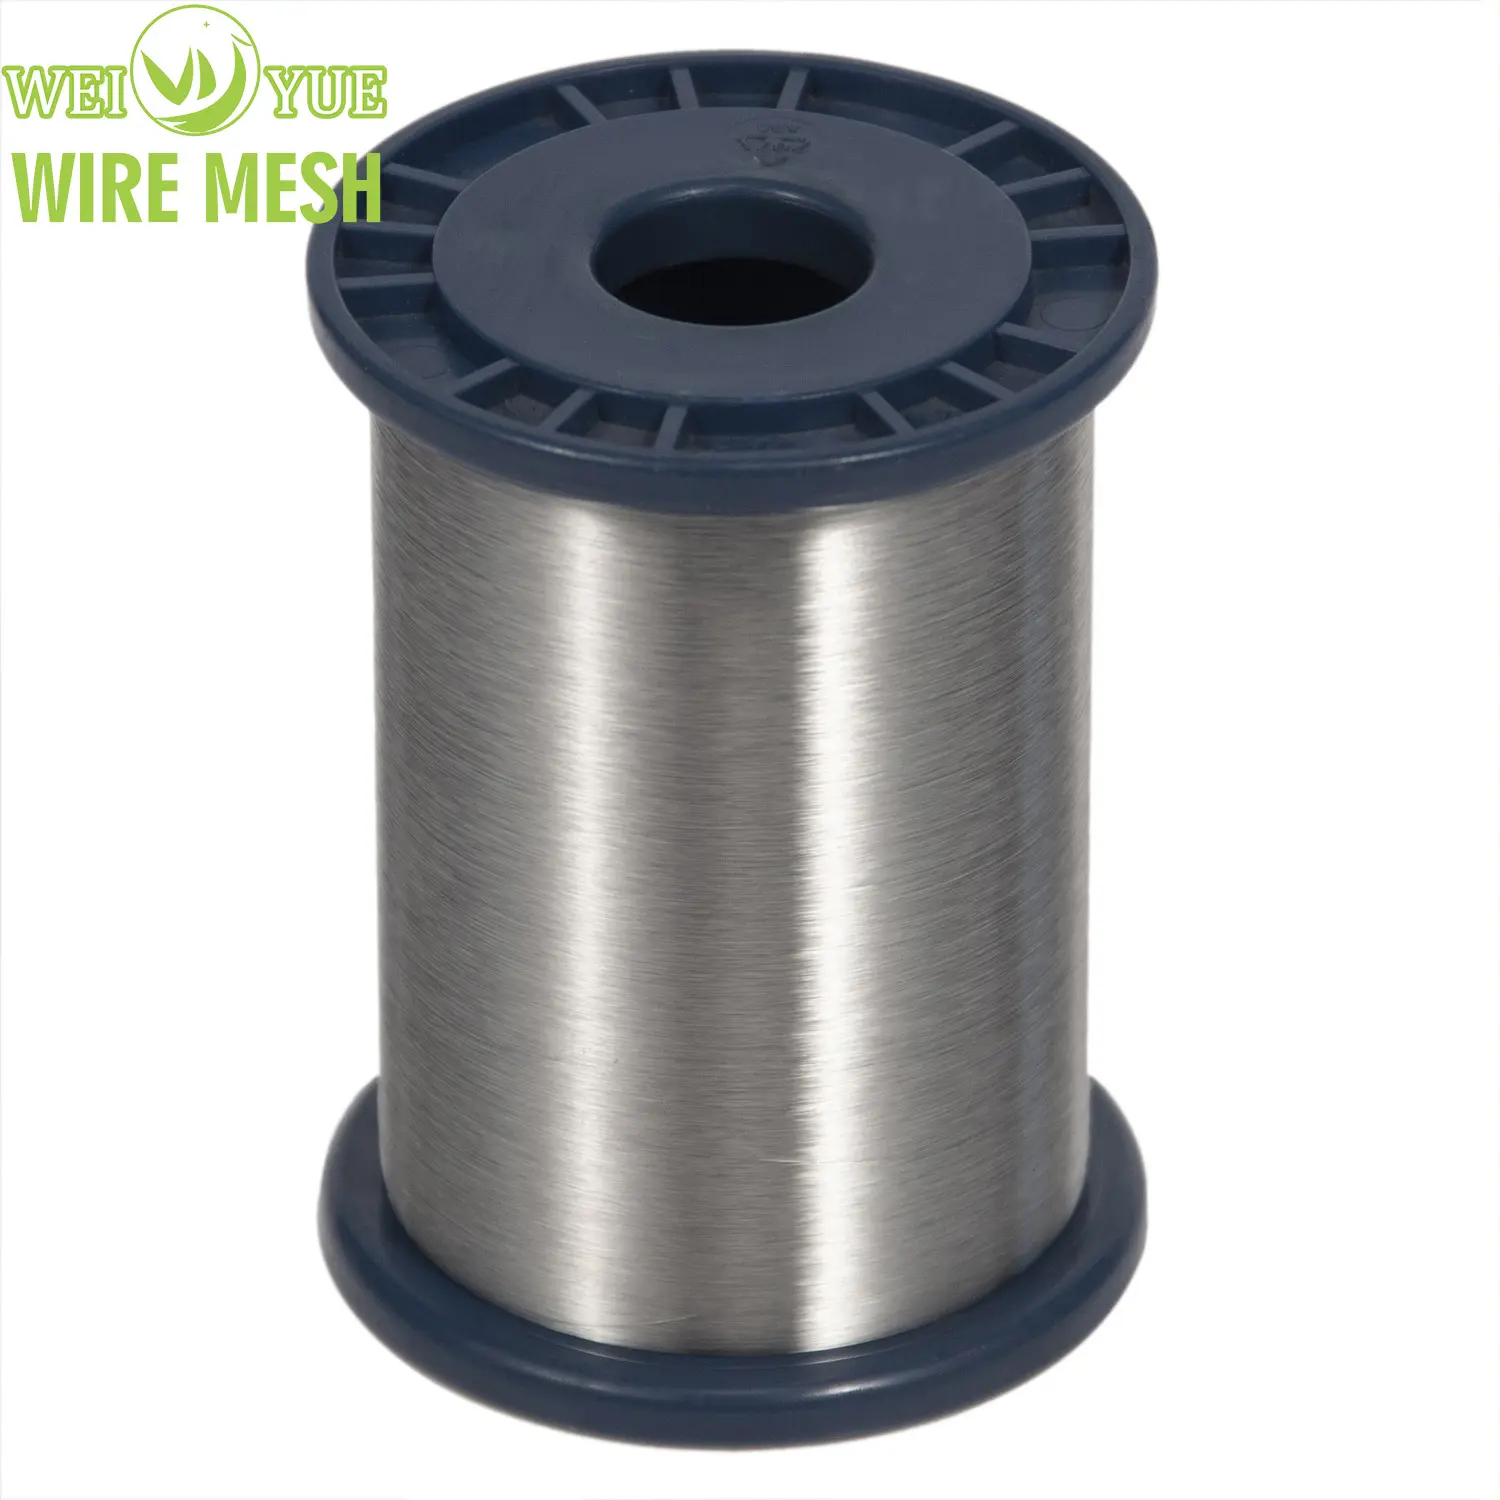 Alambre de acero inoxidable de 0.035mm para hilo/filamento de hilado resistente a cortes para textiles